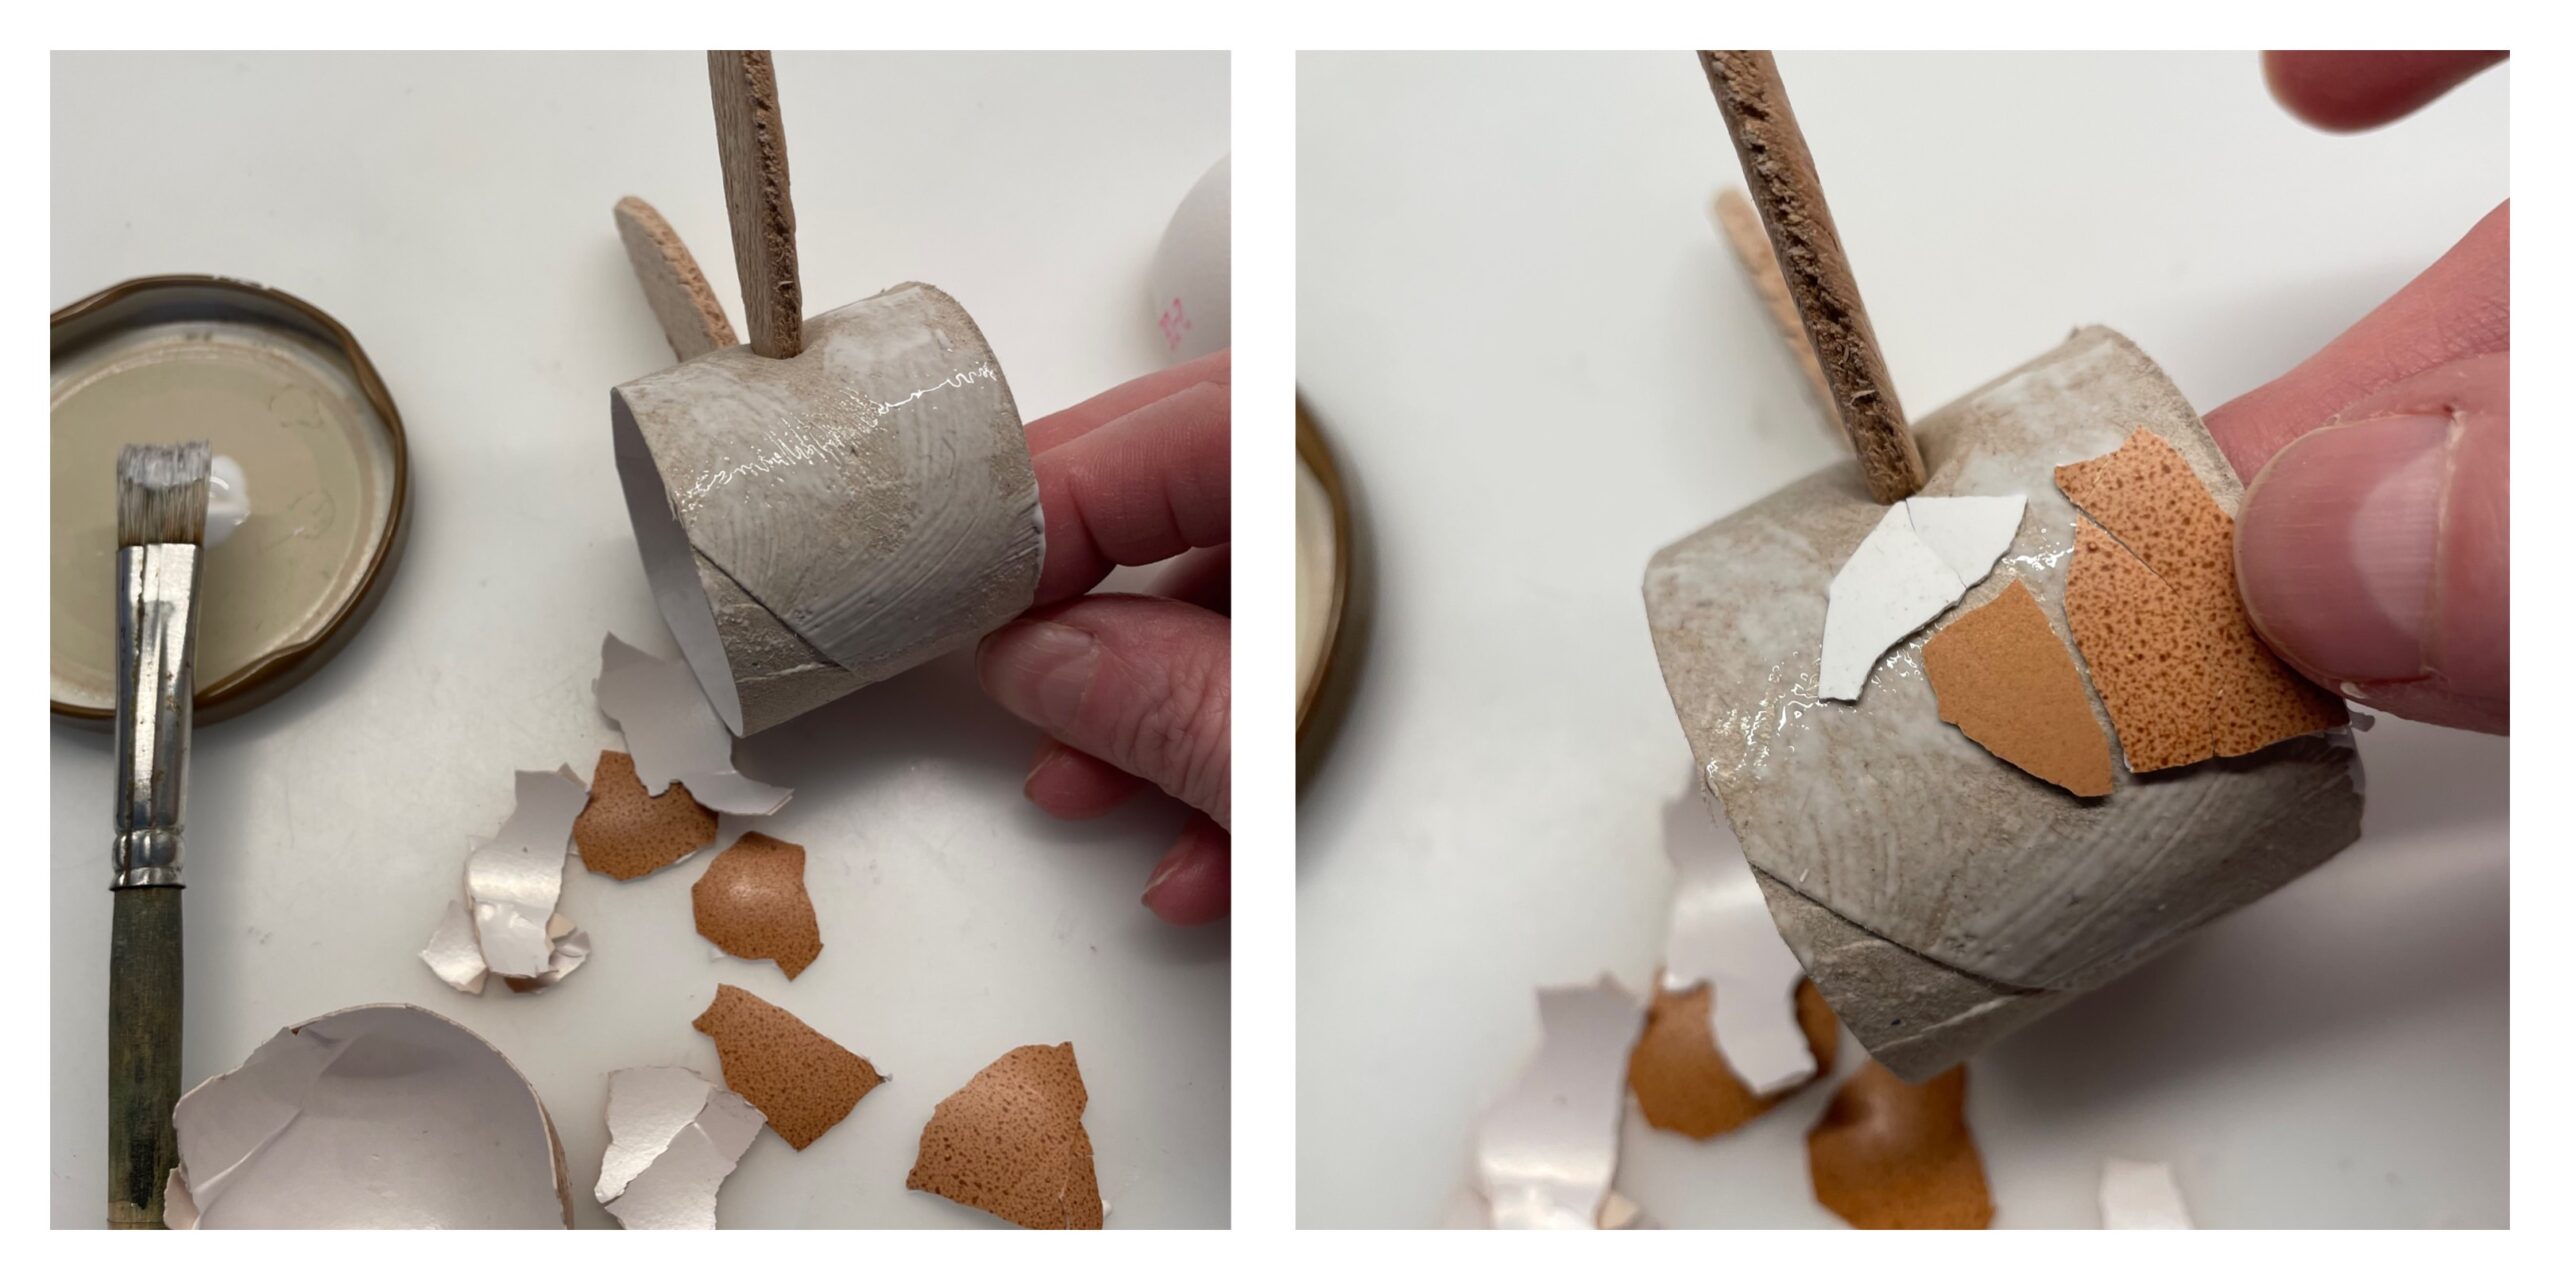 Bild zum Schritt 6 für das Bastel- und DIY-Abenteuer für Kinder: 'Streicht nun mit dem Pinsel den Kleber auf die Papprolle.'